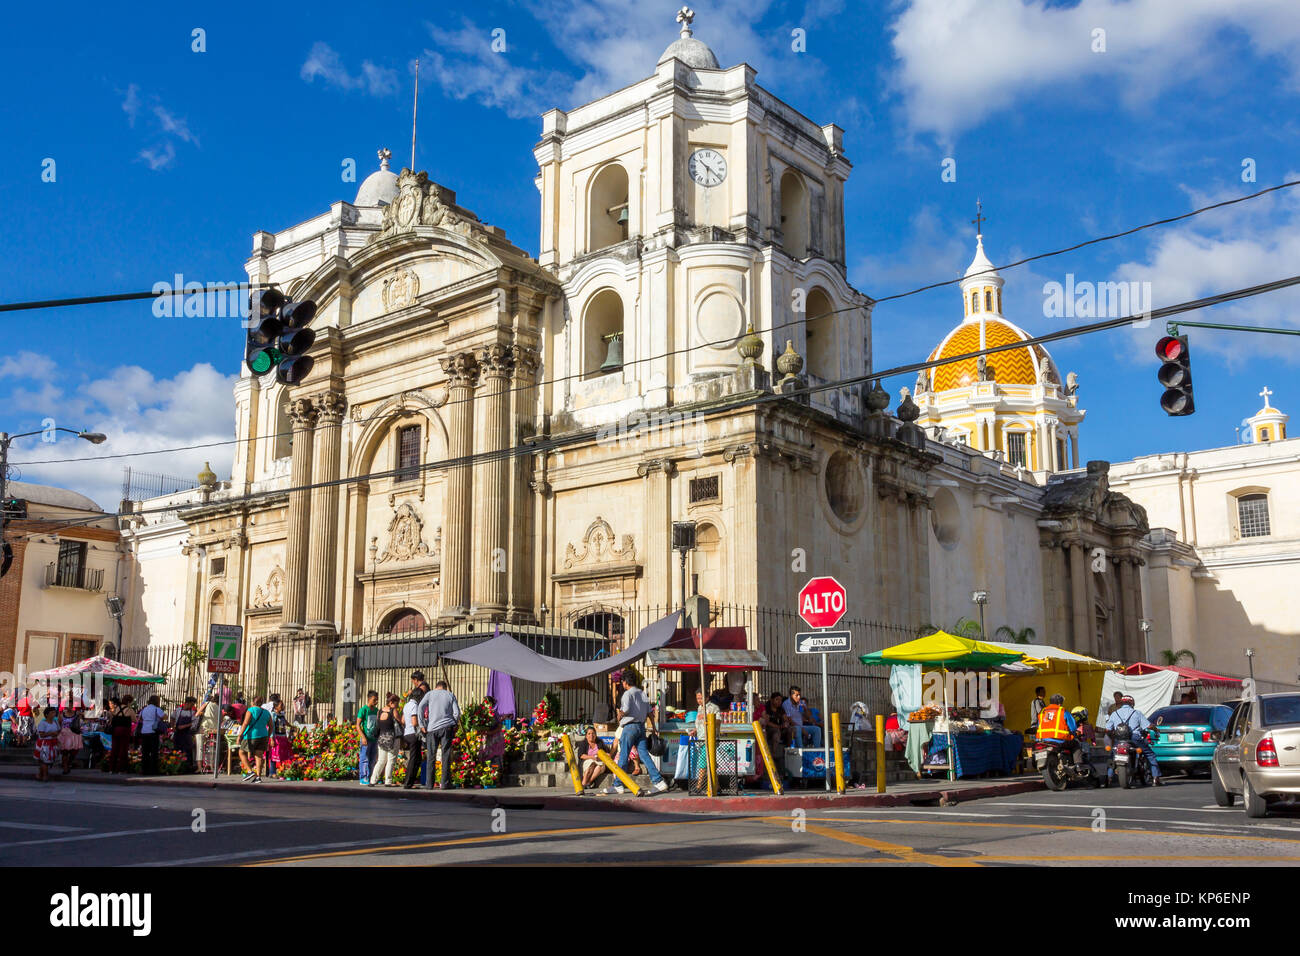 The church La Merced | Guatemala City | Guatemala Stock Photo